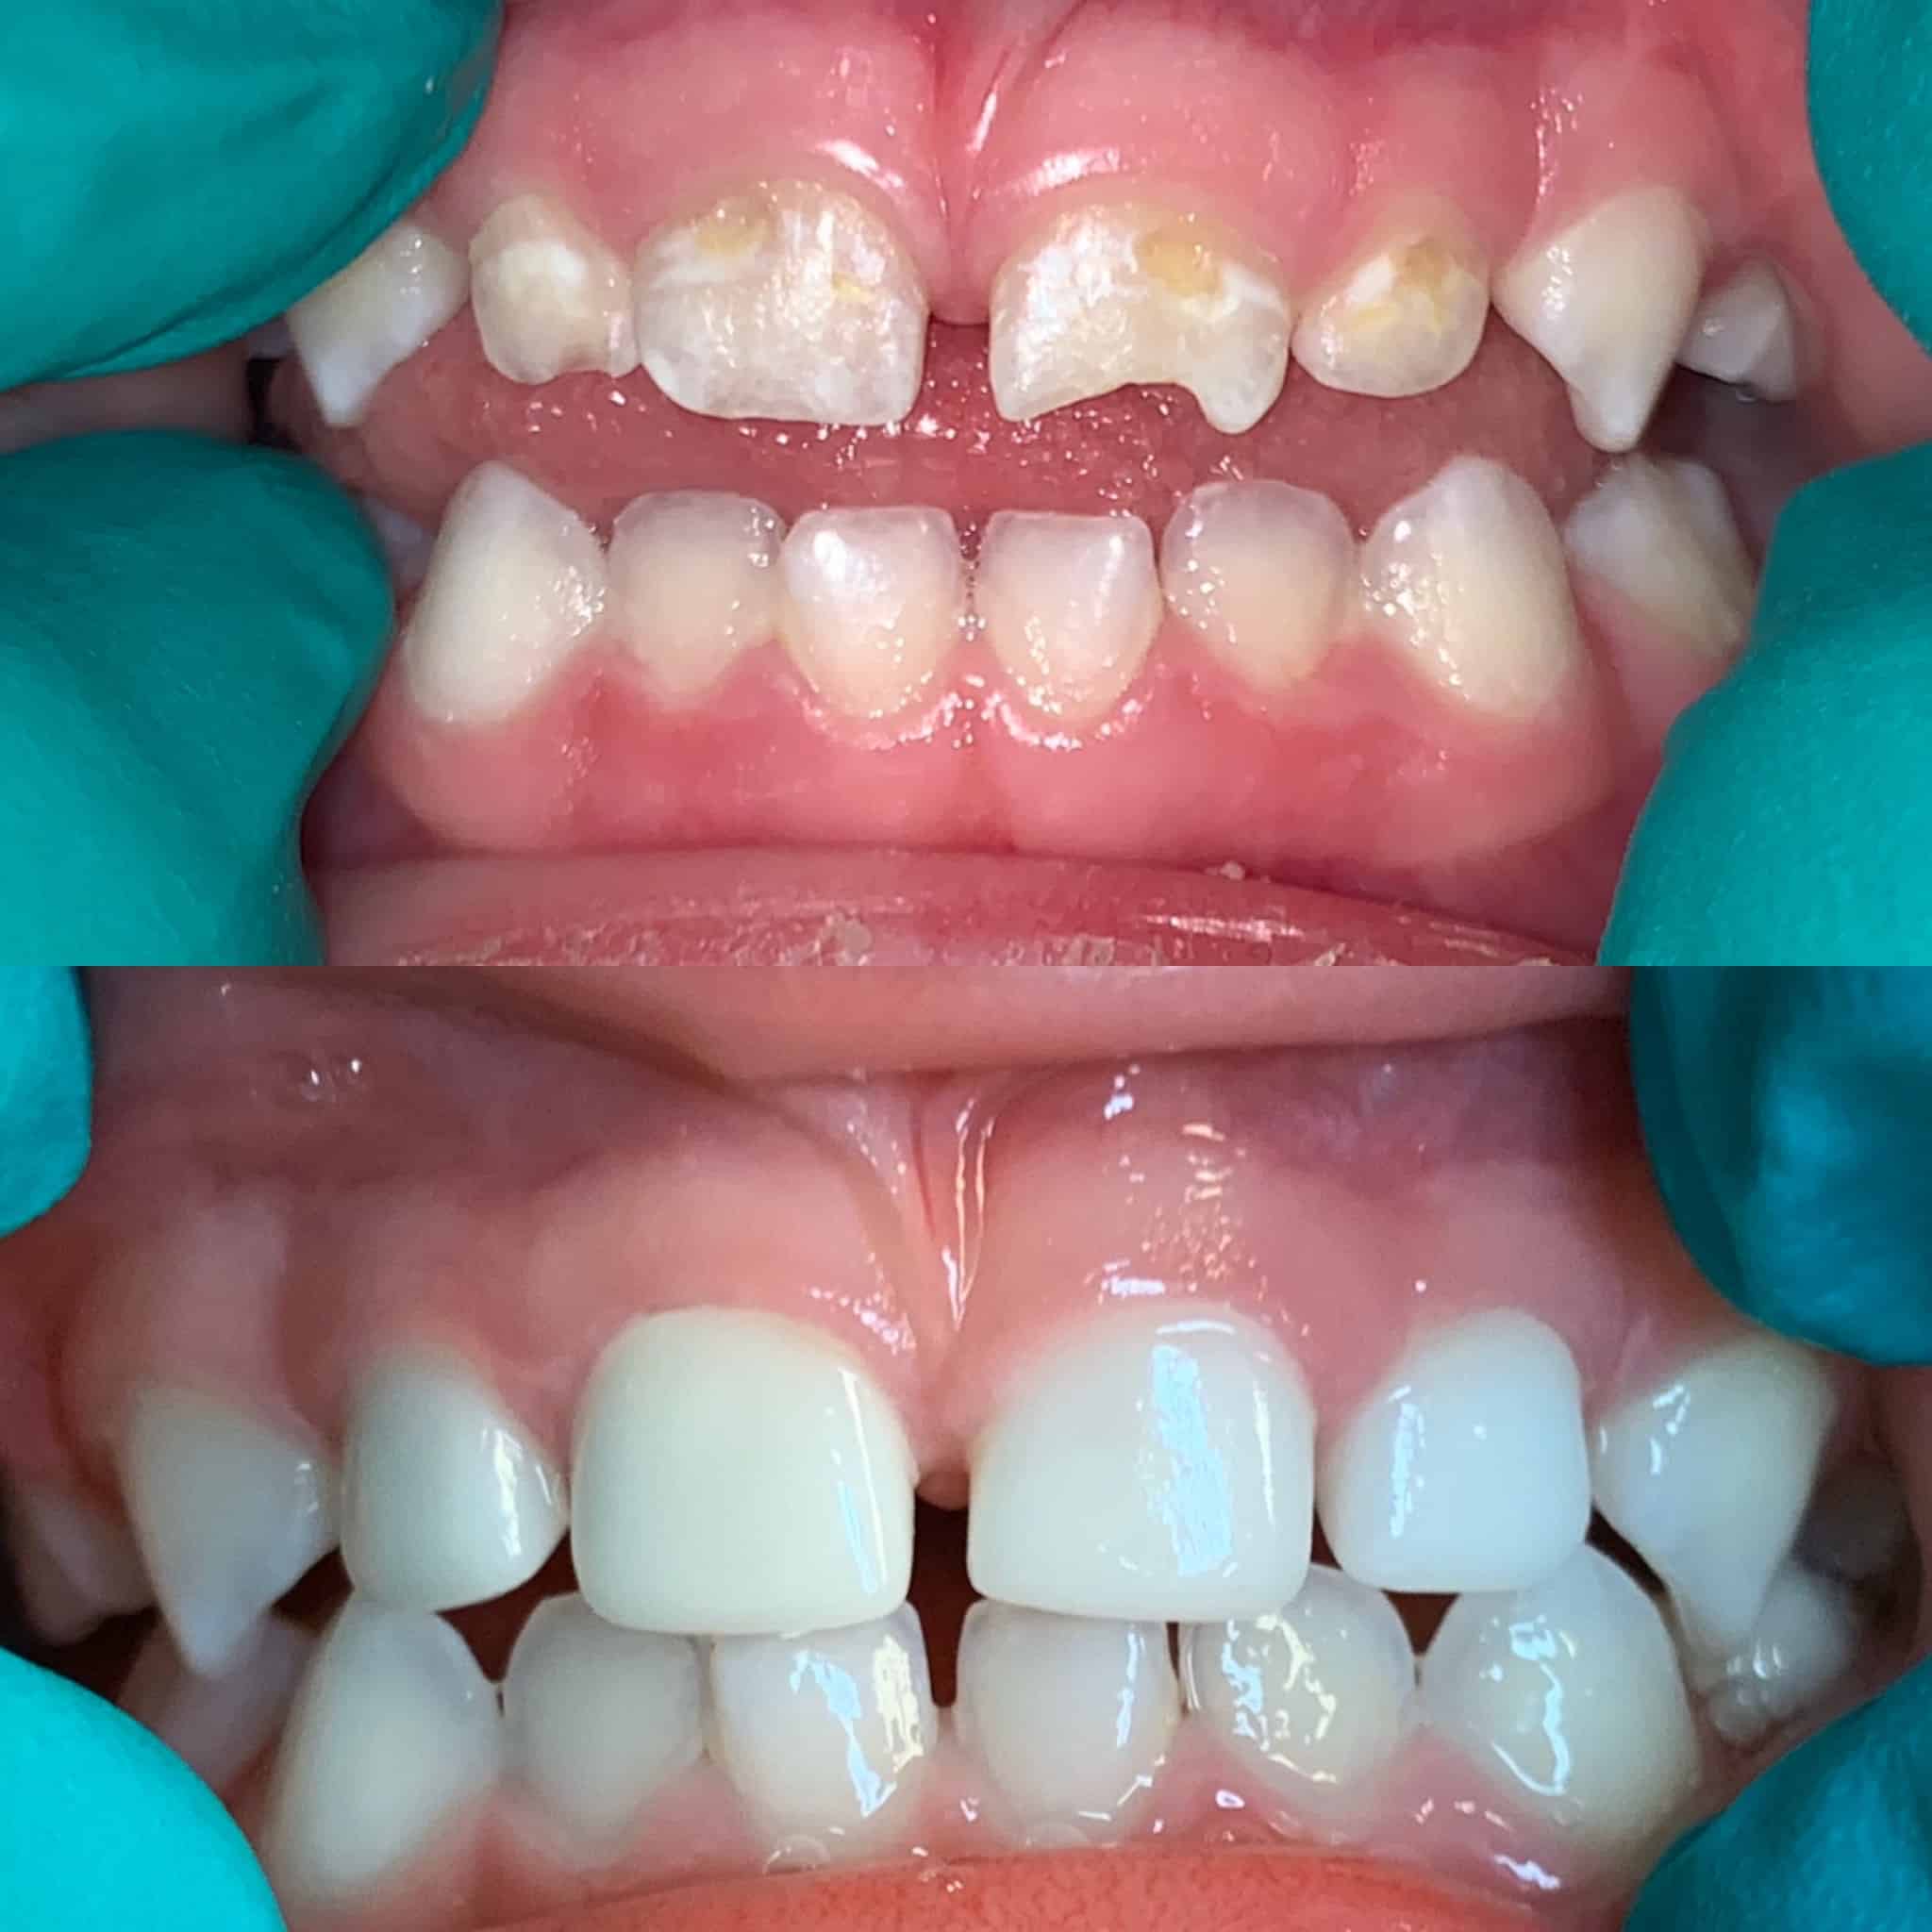 Teeth images